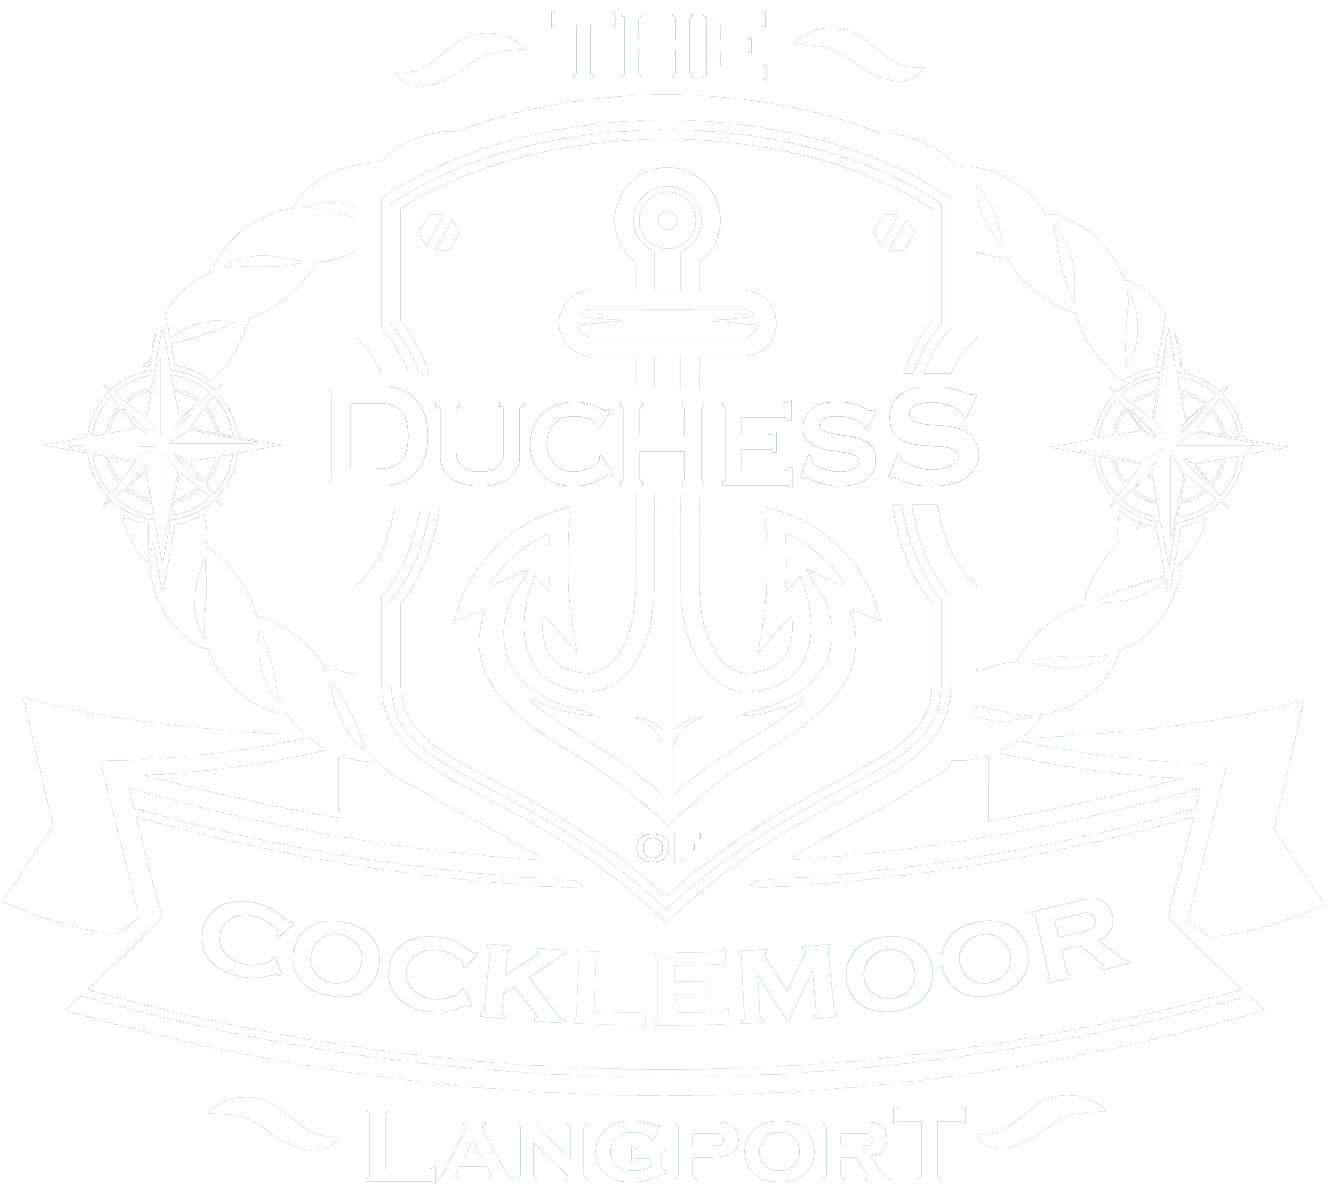 Duchess of Cocklemoor